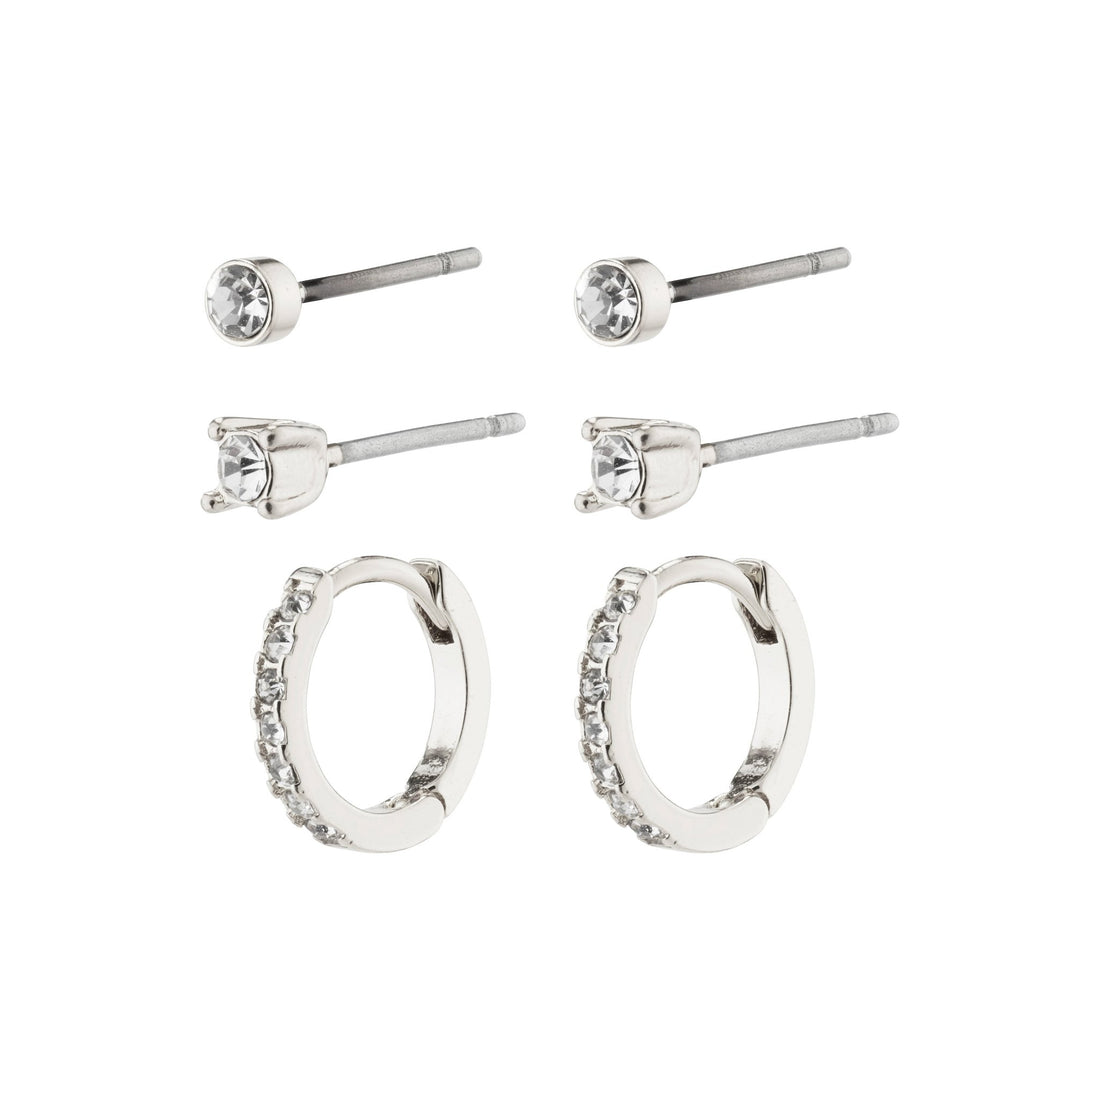 Sia Recycled Crystal 3-in-1 Earrings Set - PILGRIM